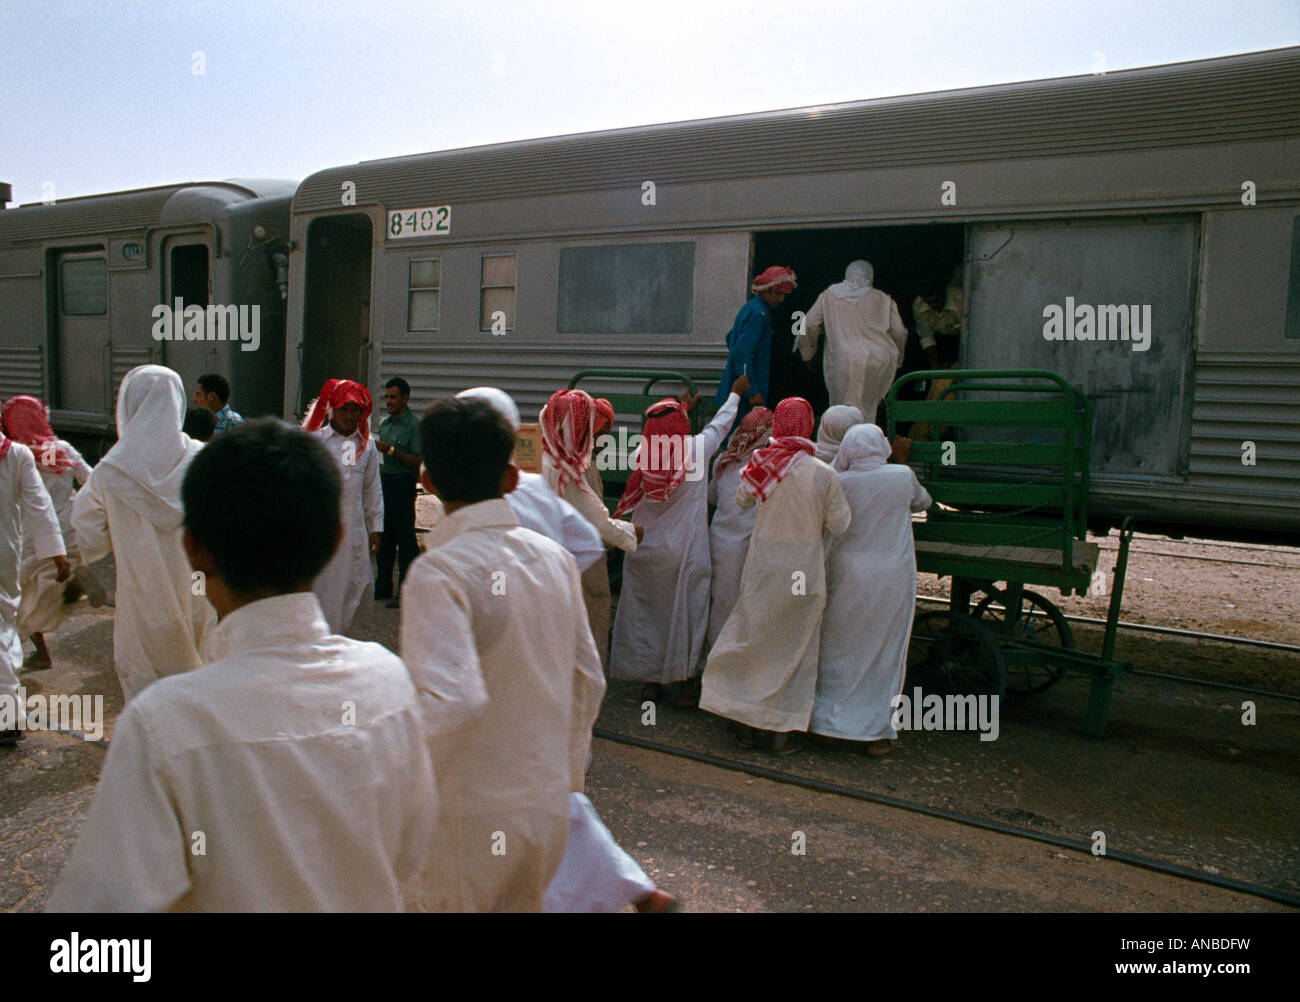 Al Hofuf Railway Station Saudi Arabia Stock Photo